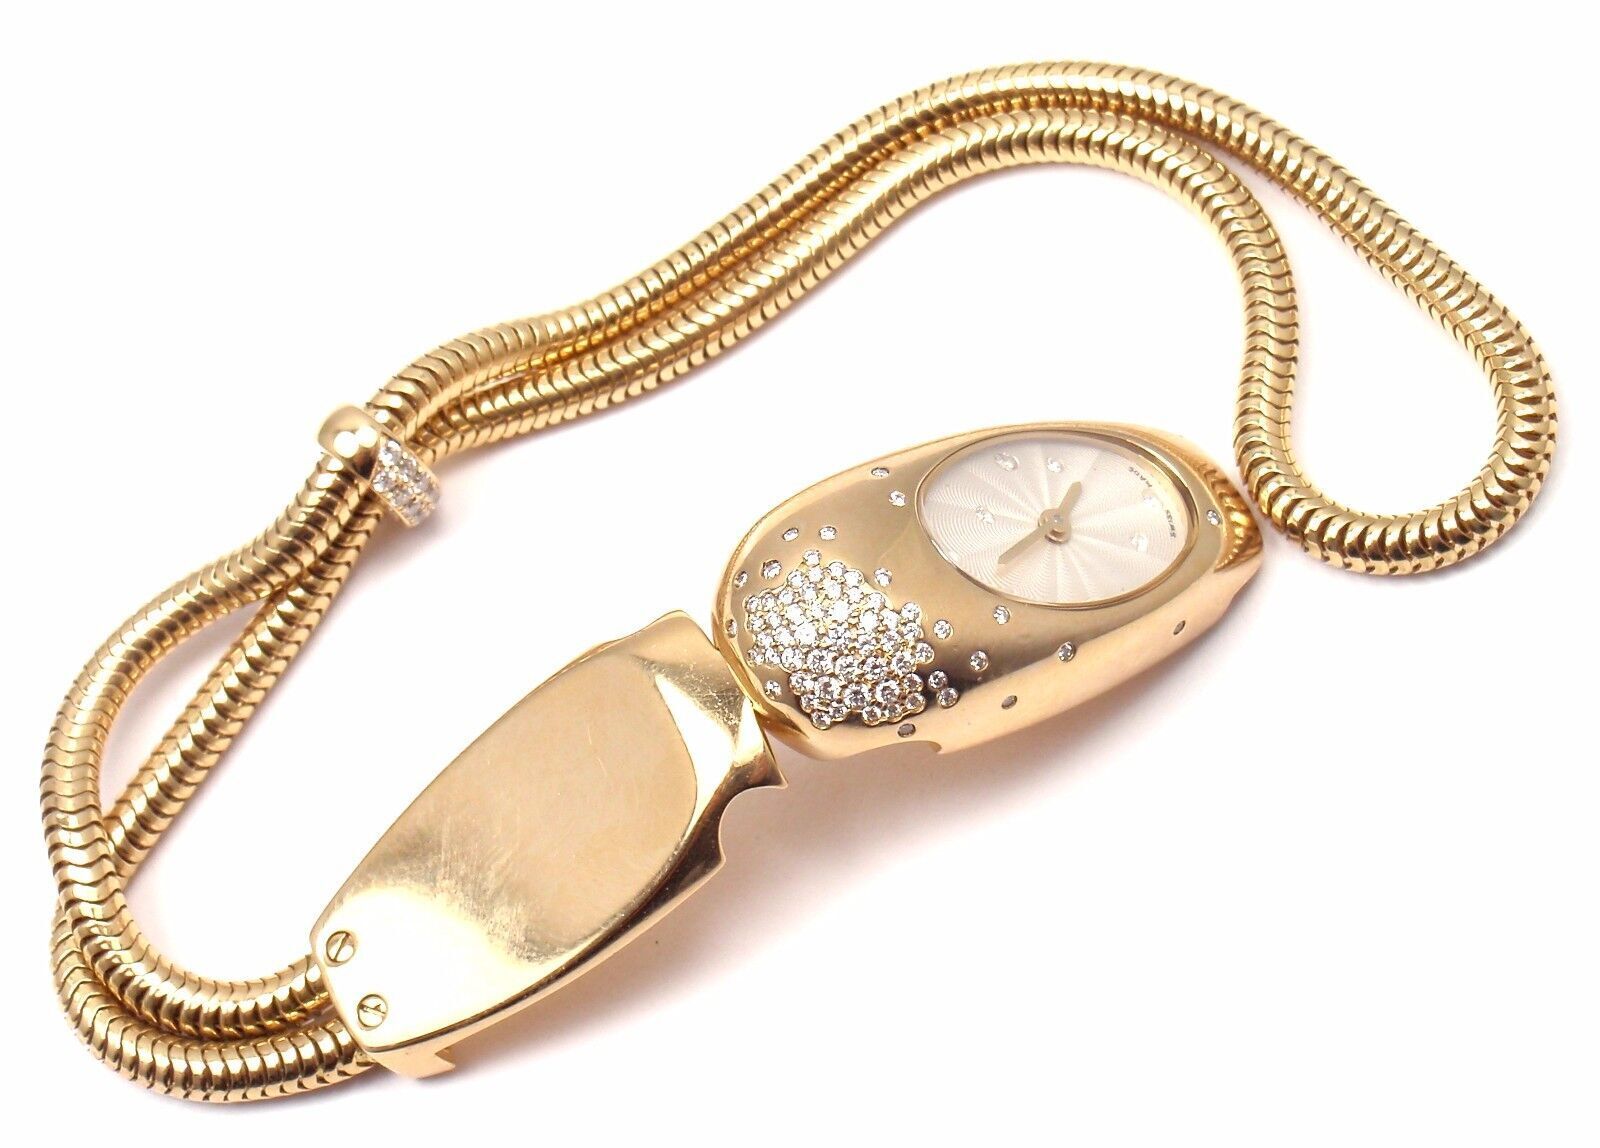 Van Cleef & Arpels Jewelry & Watches:Watches, Parts & Accessories:Watches:Wristwatches Authentic Van Cleef & Arpels 18k Yellow Gold Cadenas Serti Diamond Ladies Watch